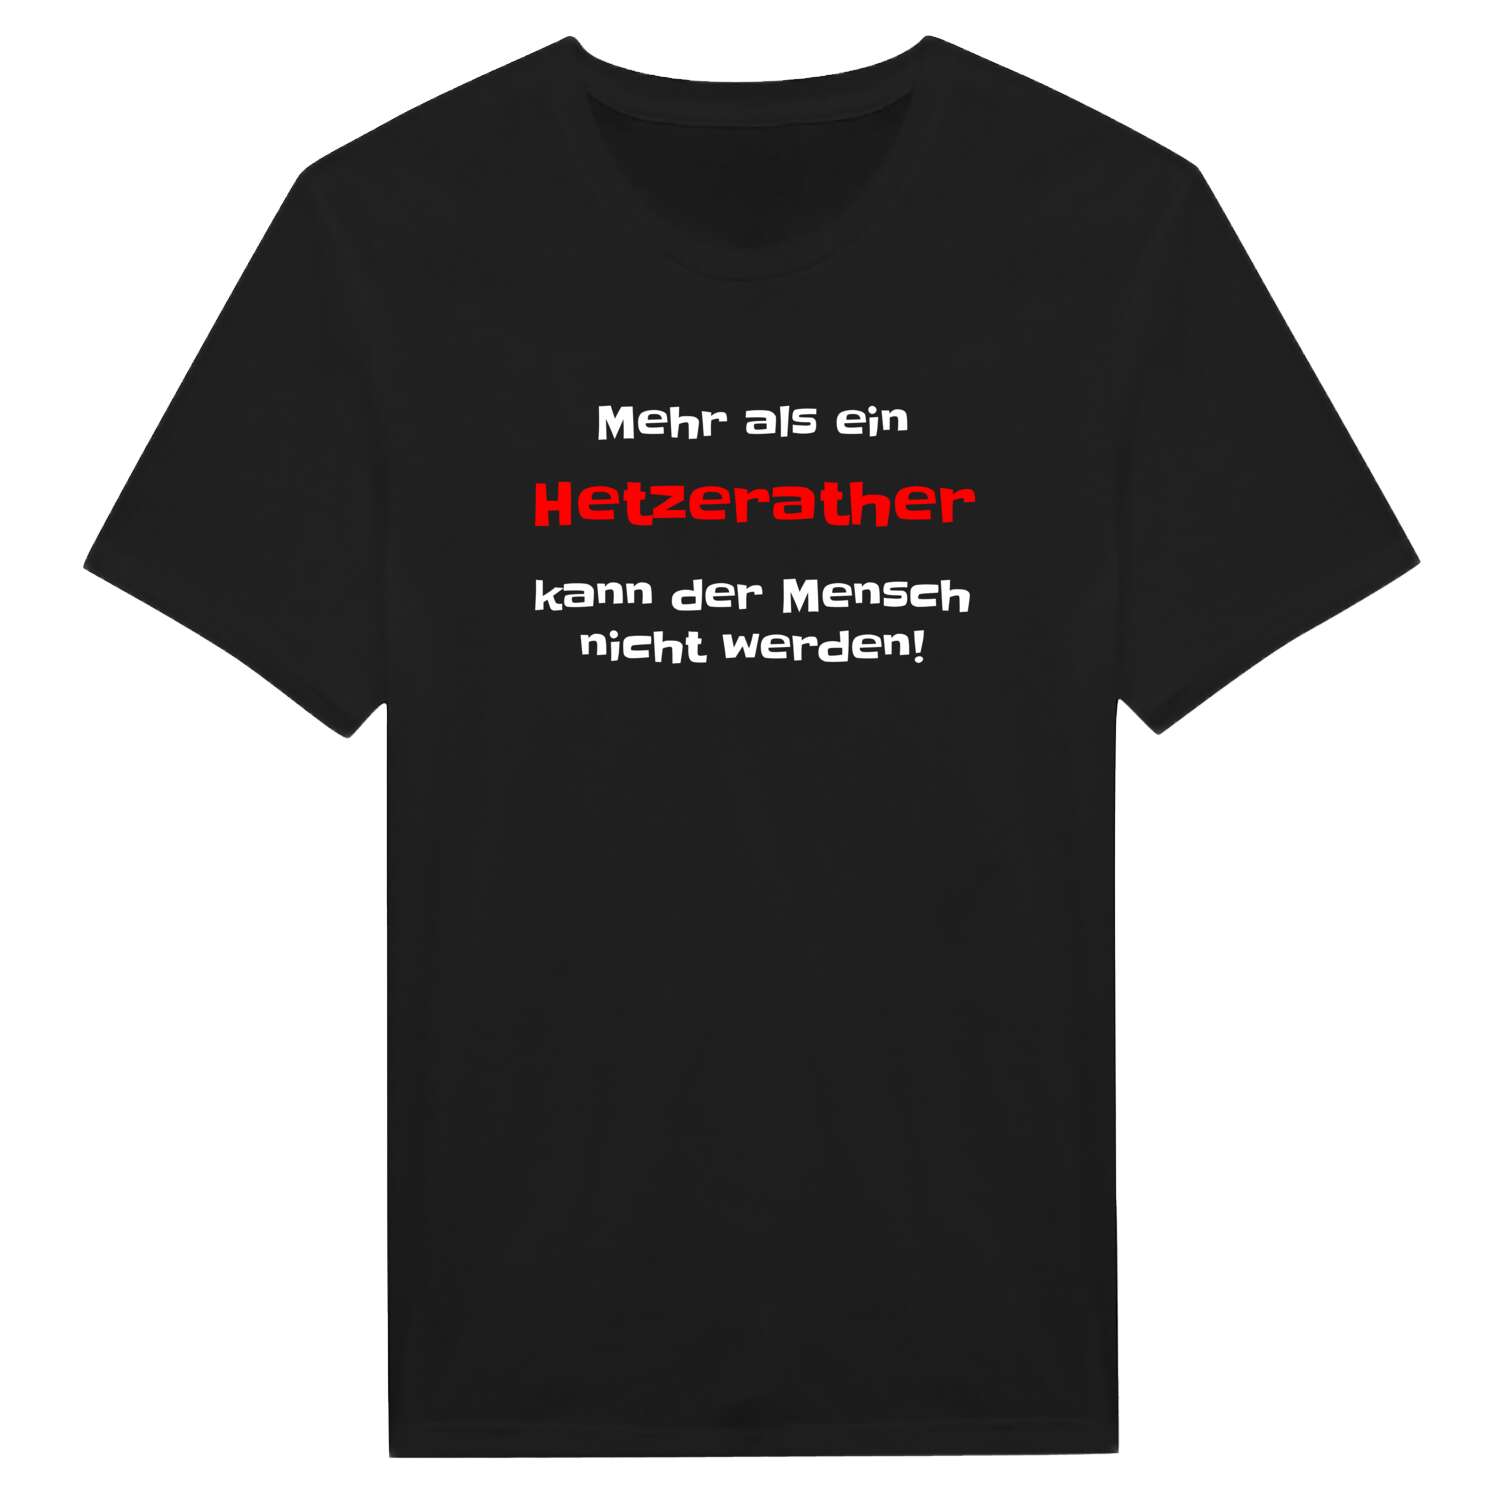 Hetzerath T-Shirt »Mehr als ein«